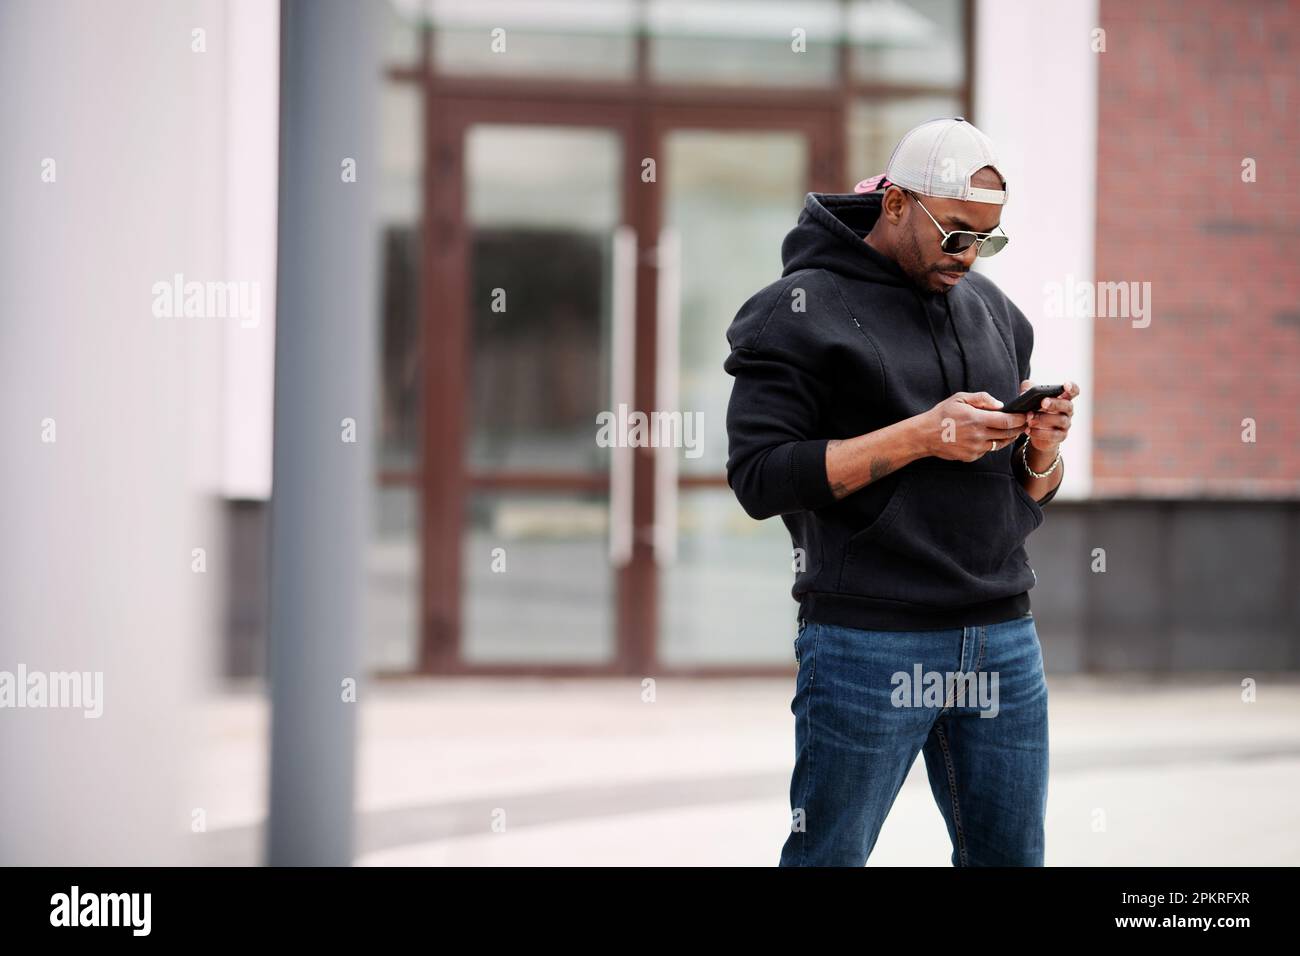 L'homme noir afro-américain utilise un téléphone portable, se tient dans la rue, porte un sweat à capuche, une casquette de baseball et des lunettes de soleil. Portrait modèle mâle élégant regarde h Banque D'Images